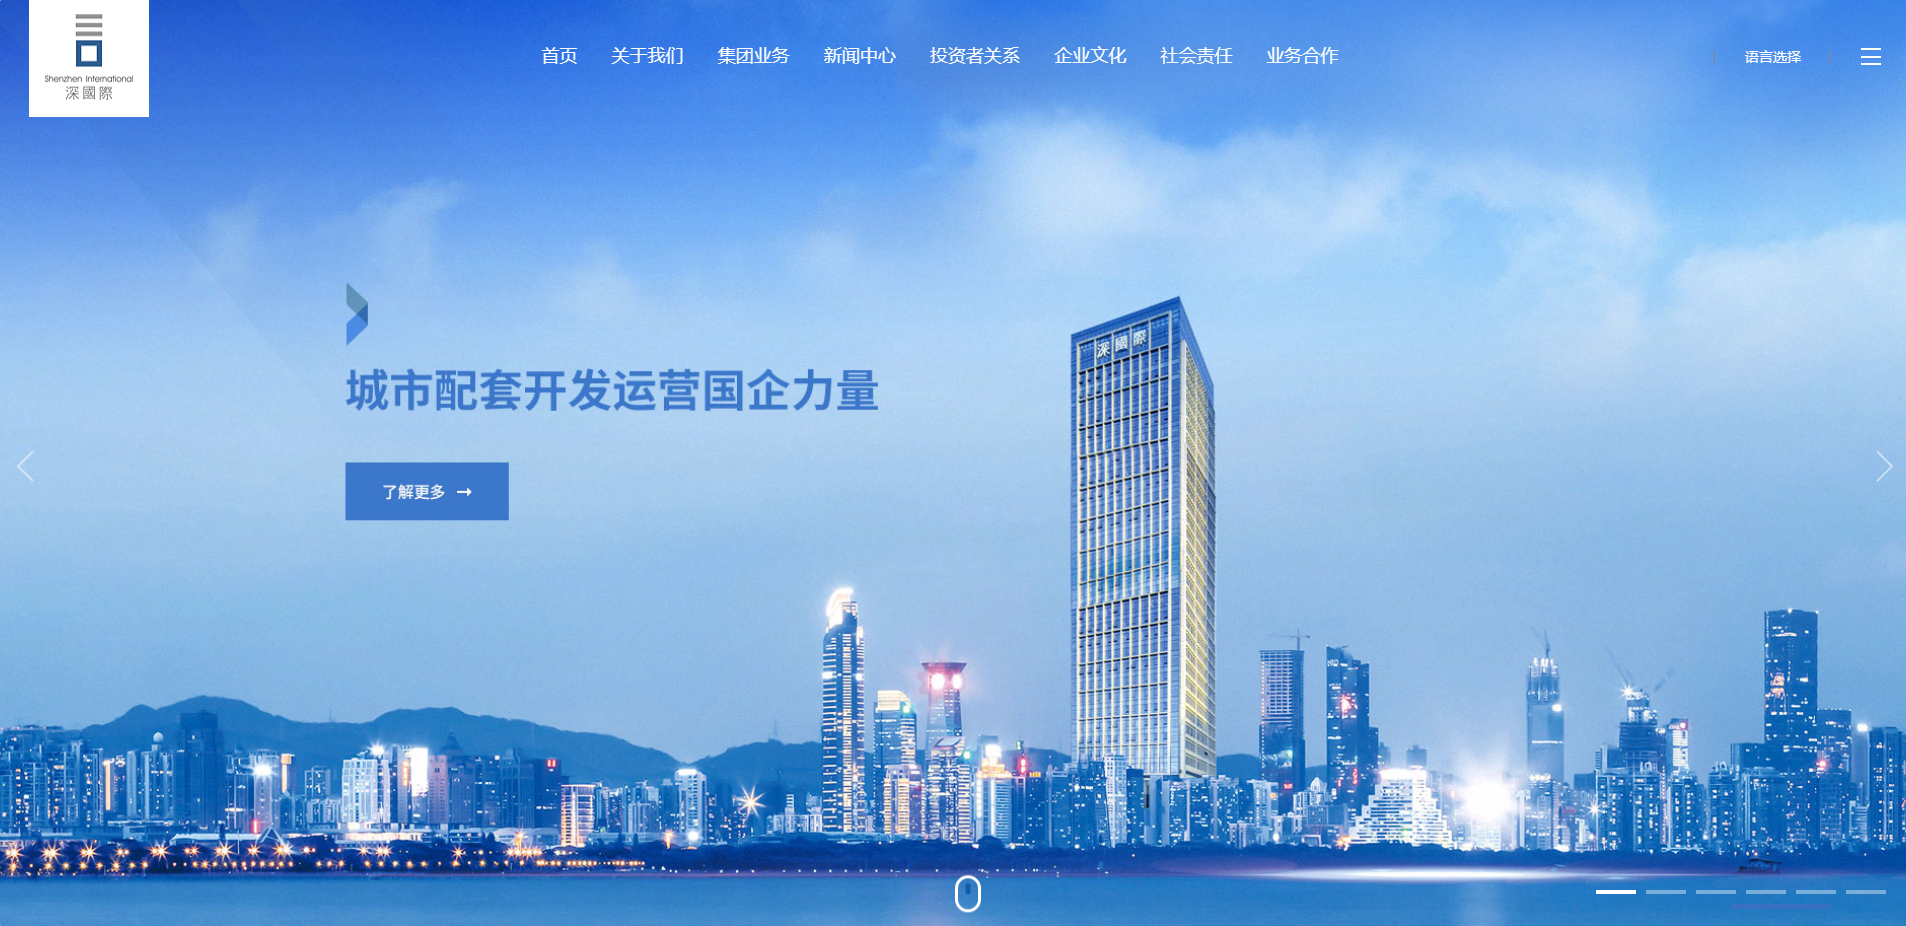 深圳国际控股(城市基础设施开发商和运营服务商)